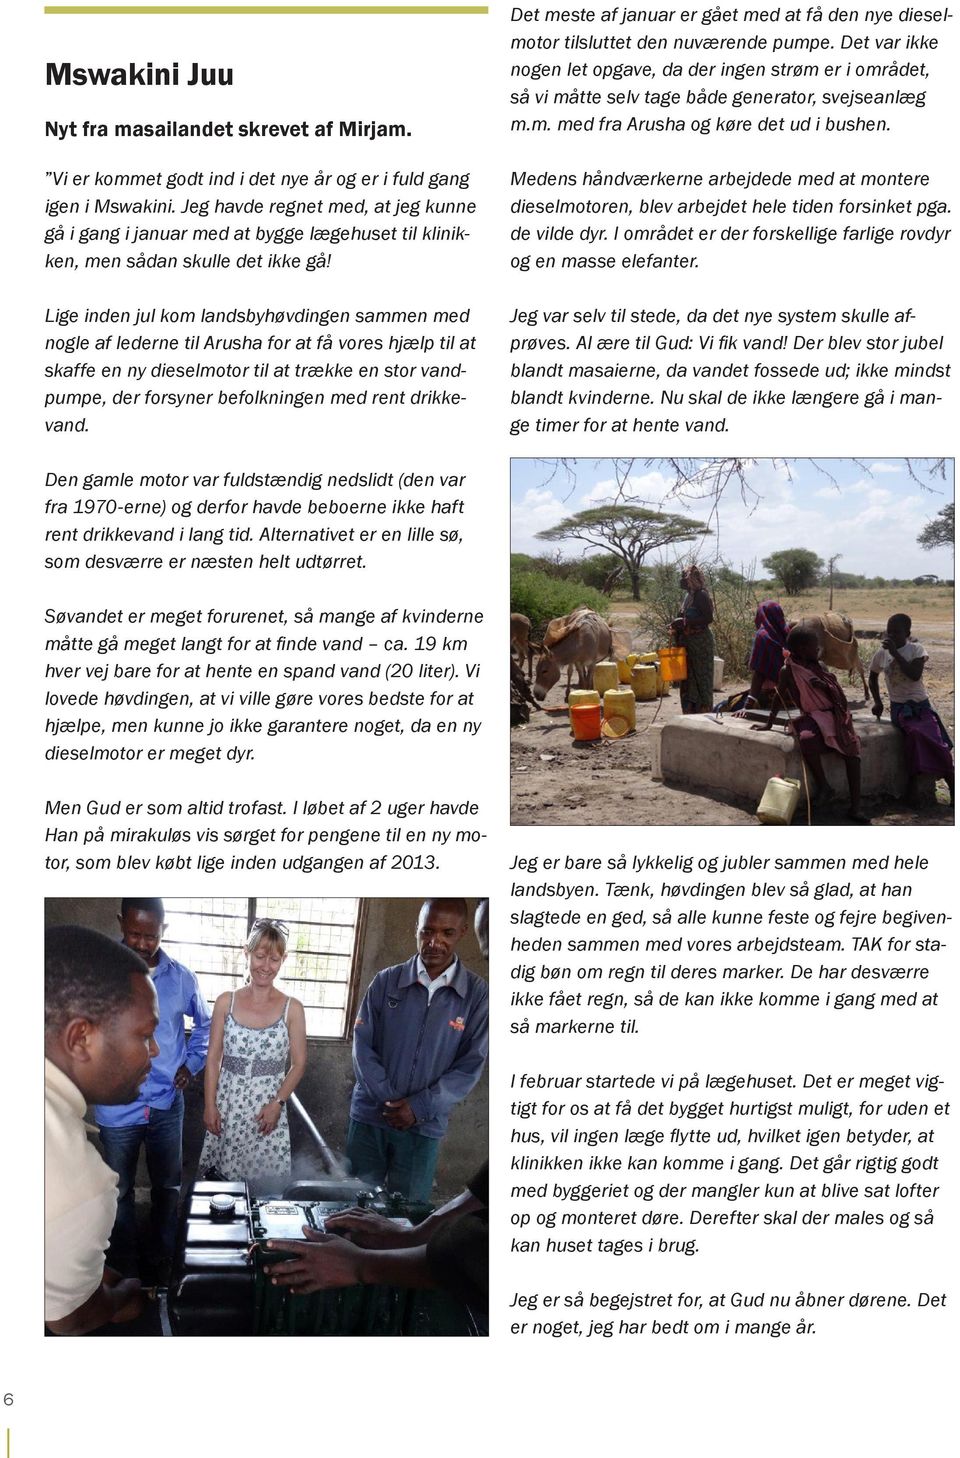 Lige inden jul kom landsbyhøvdingen sammen med nogle af lederne til Arusha for at få vores hjælp til at skaffe en ny dieselmotor til at trække en stor vandpumpe, der forsyner befolkningen med rent